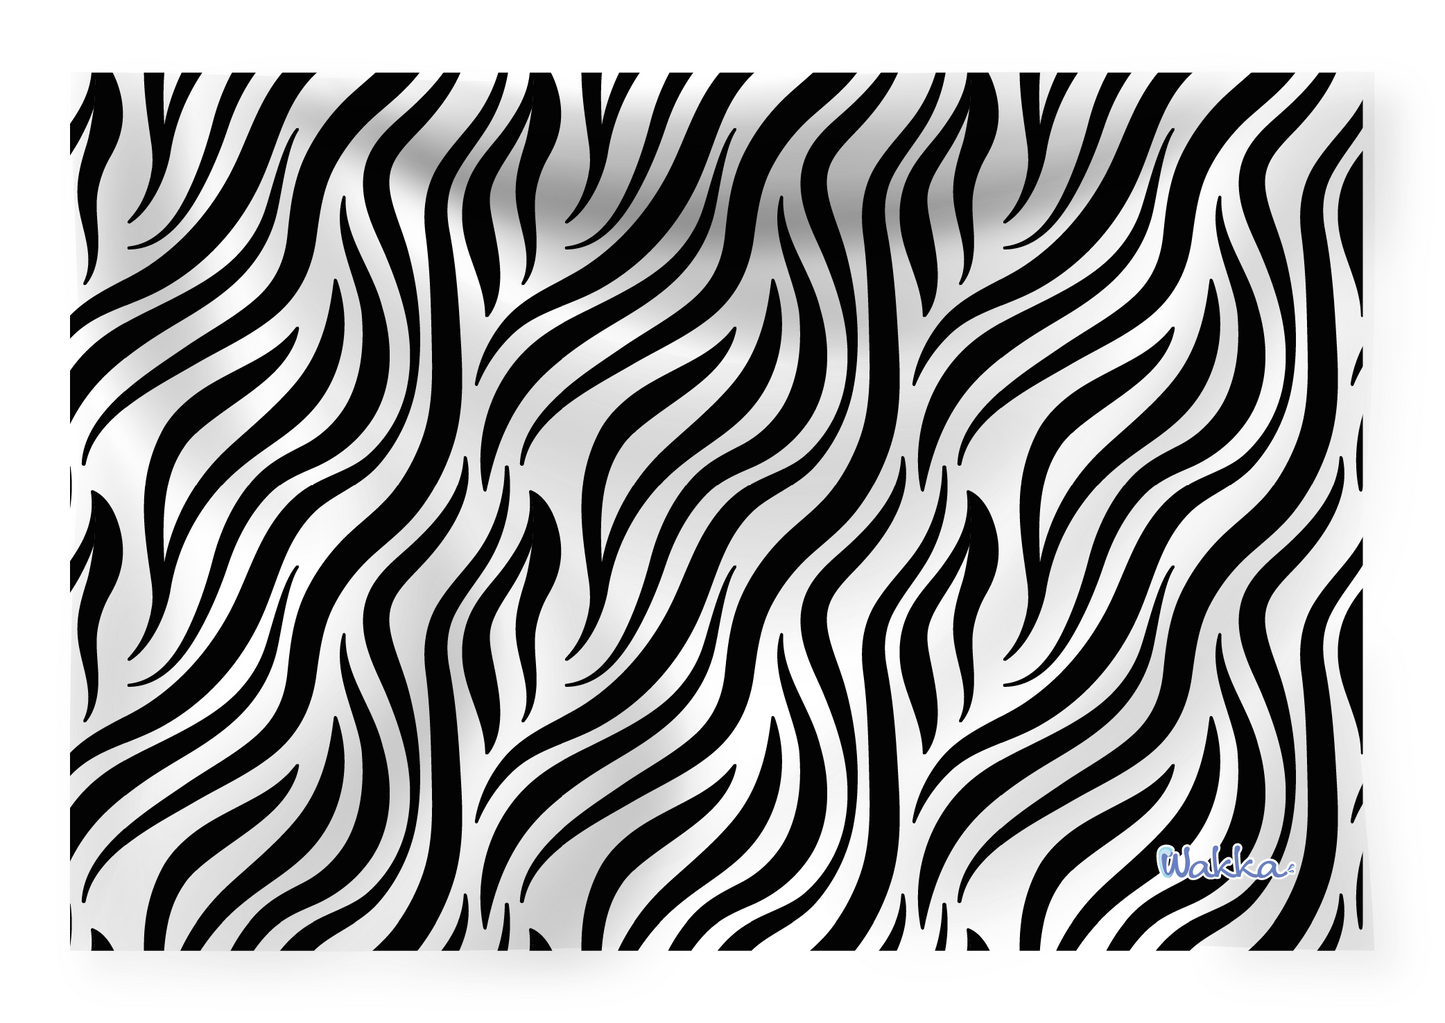 Toalla Zebra